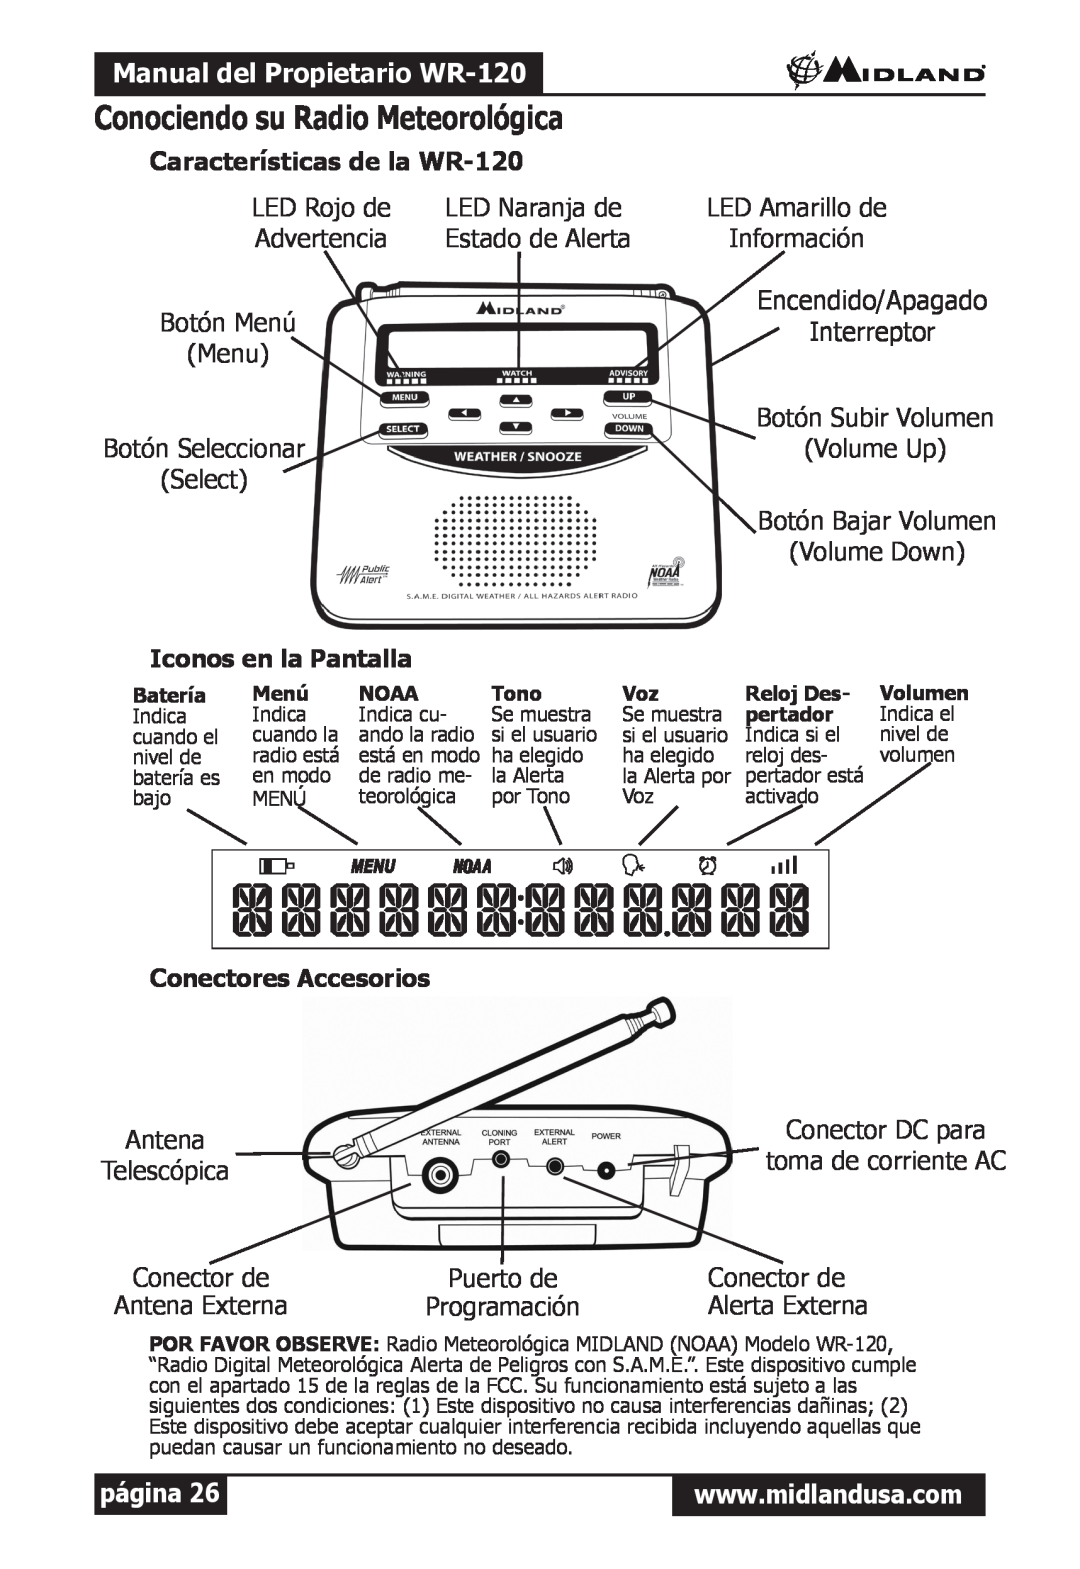 Midland Radio Conociendo su Radio Meteorológica, Manual del Propietario WR-120, Características de la WR-120, página 